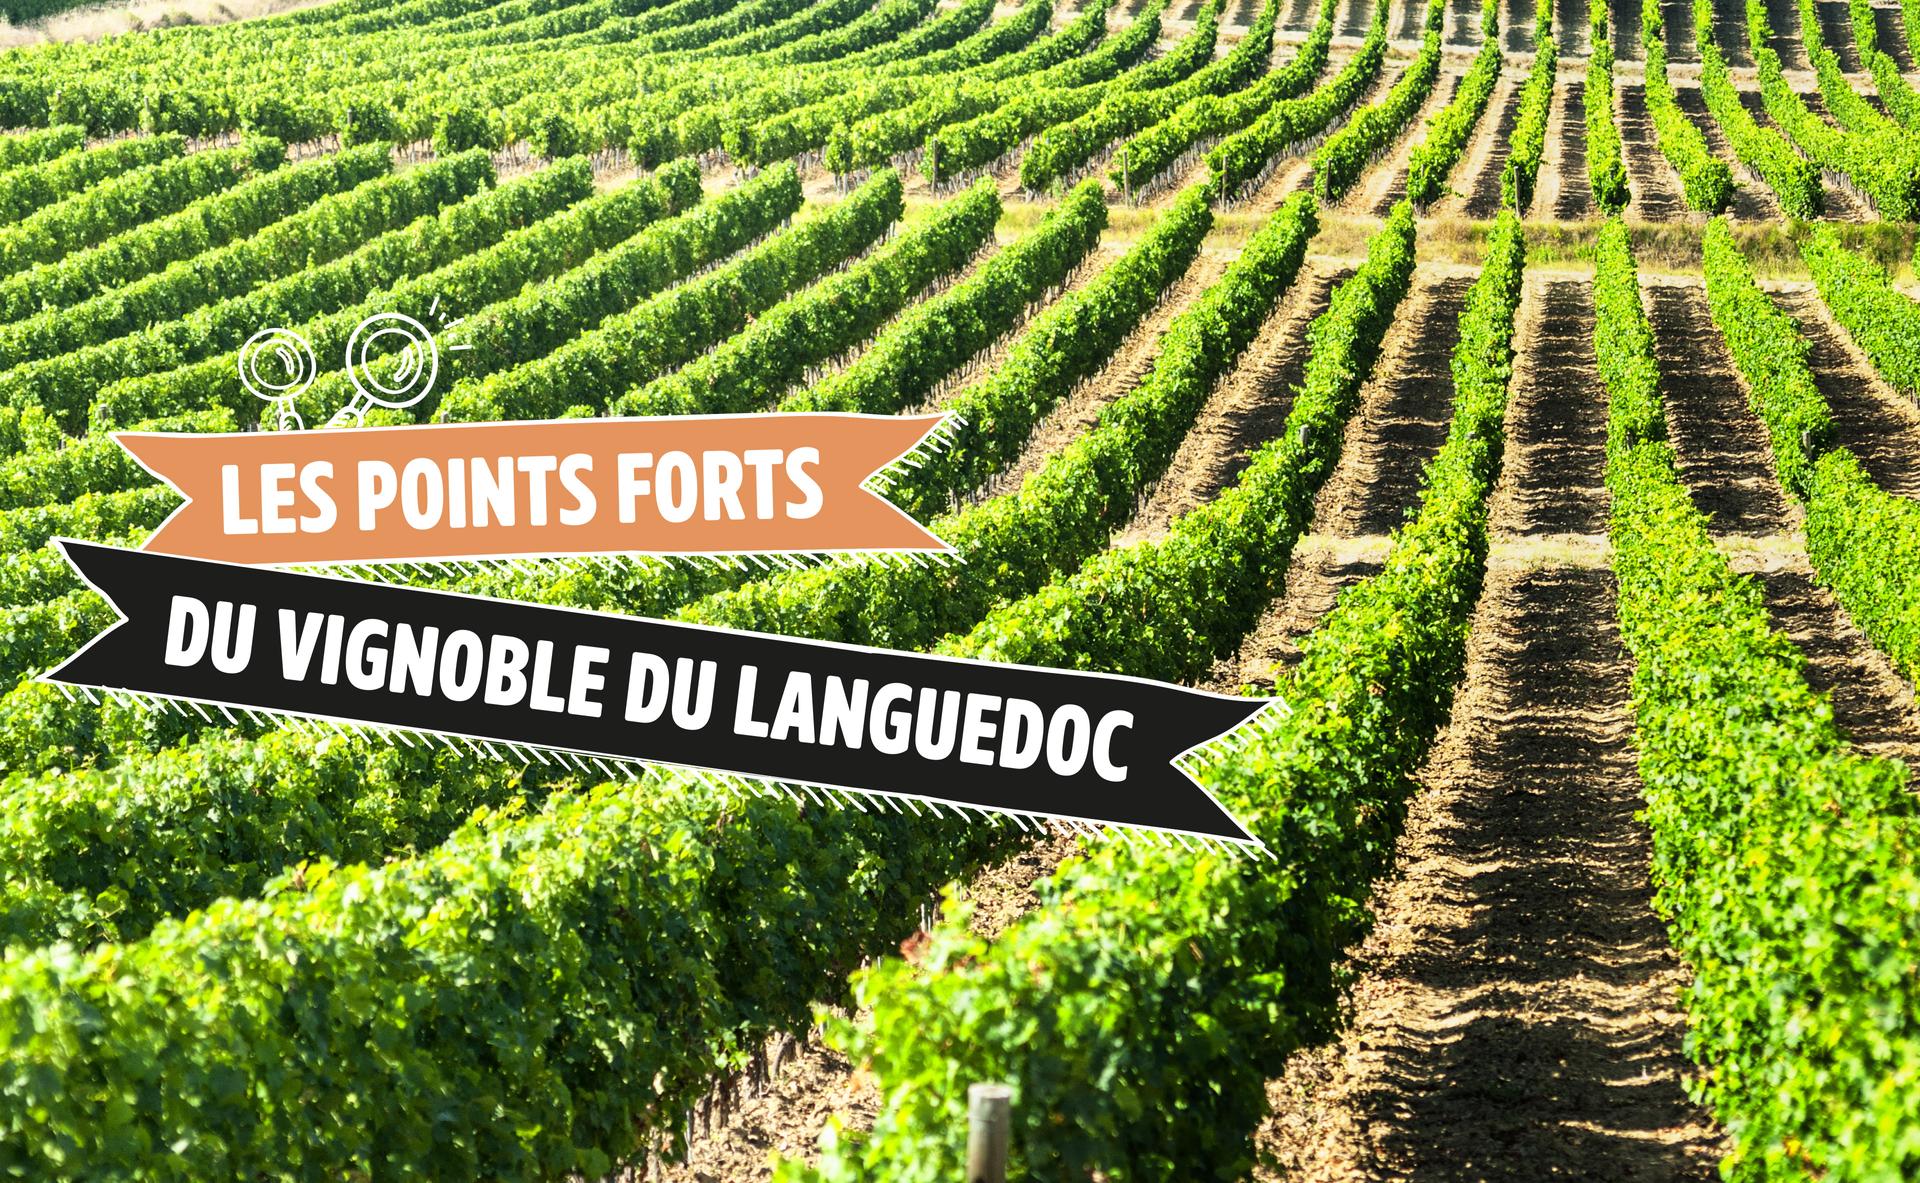 Les points forts du vignoble du Languedoc